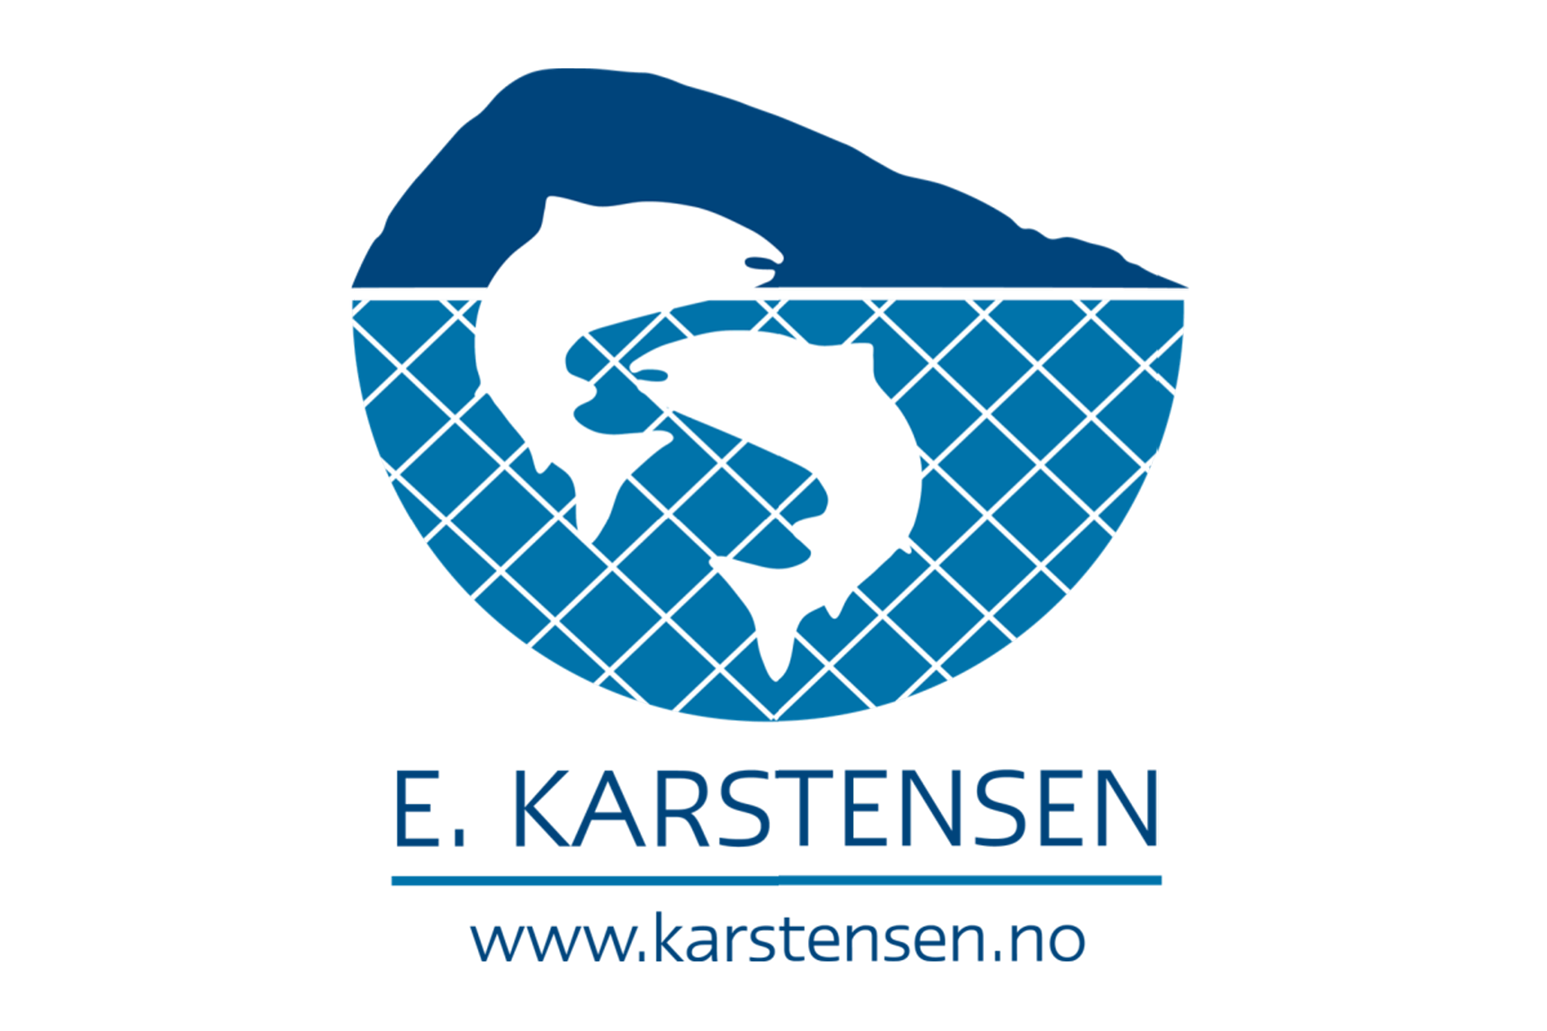 karstensen-logo-800 OK.png